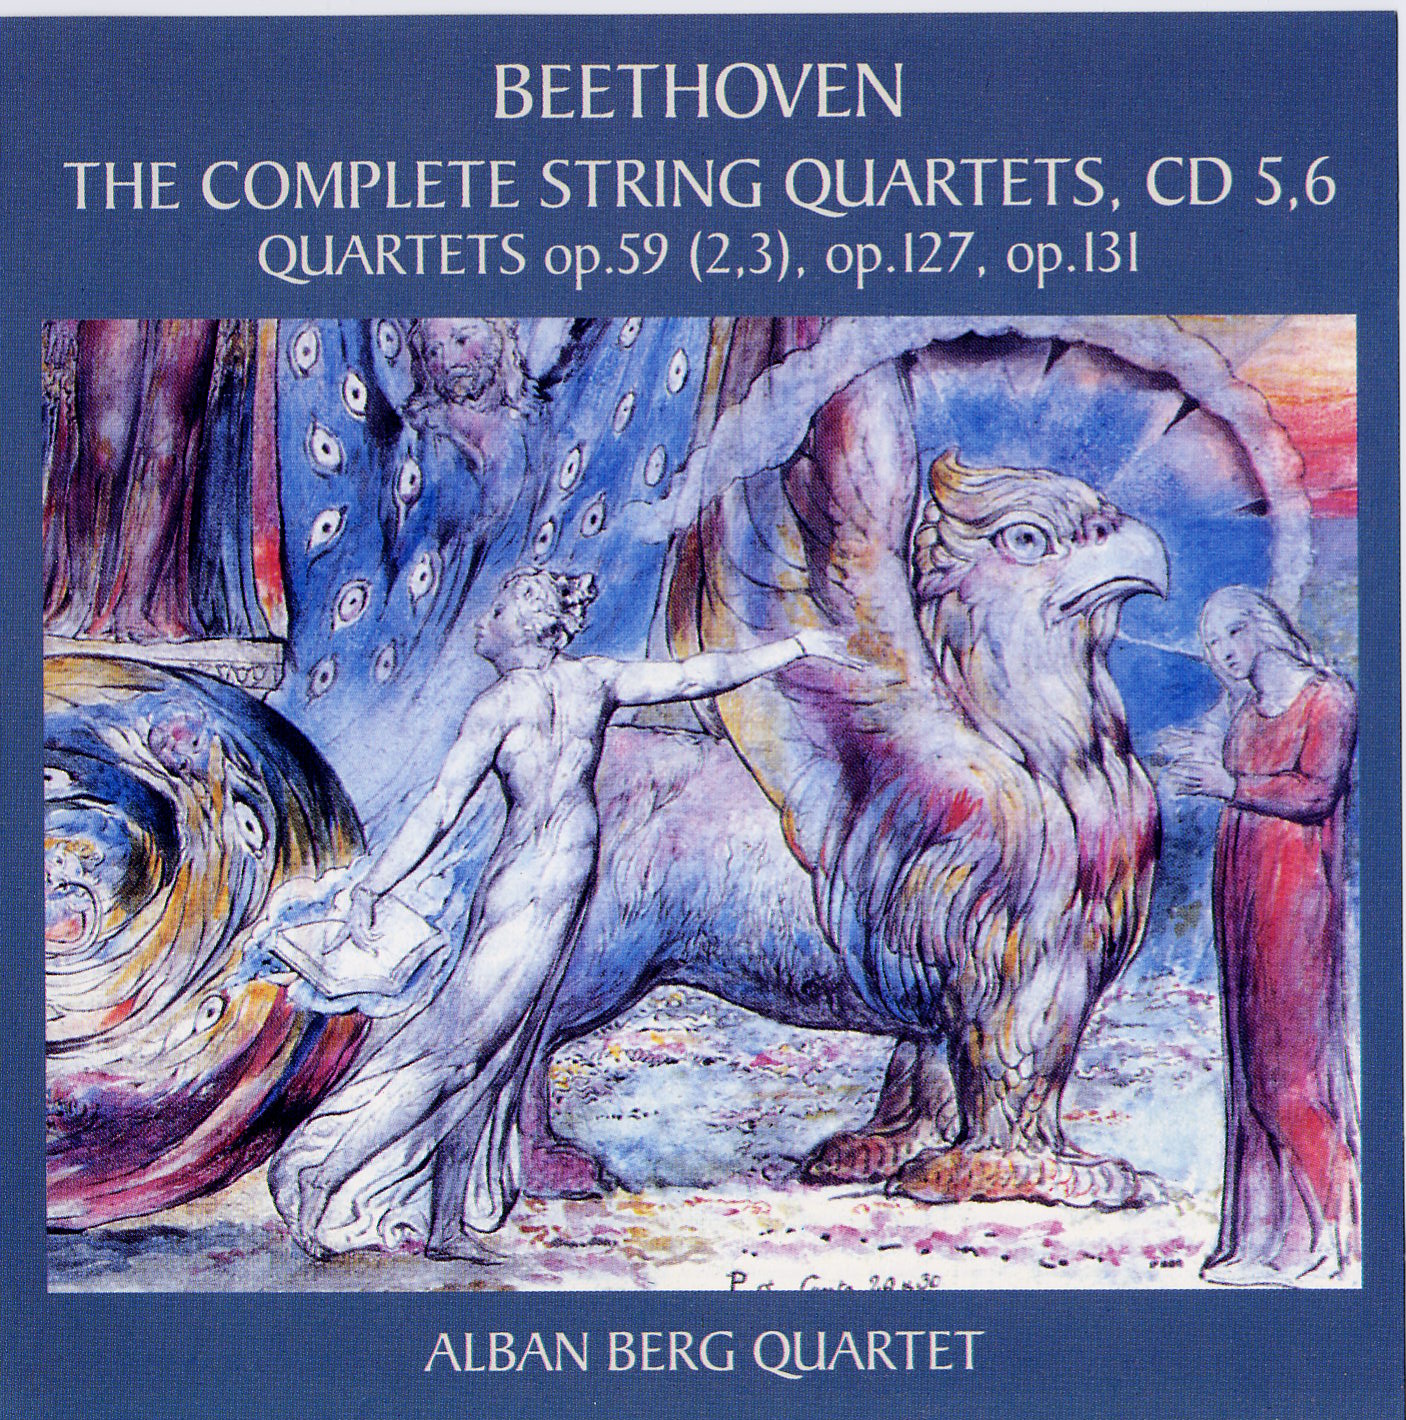 Ludwig van Beethoven 'The Complete String Quartets'Alban Berg Quartett 5,6' CD2/1999/Classic/